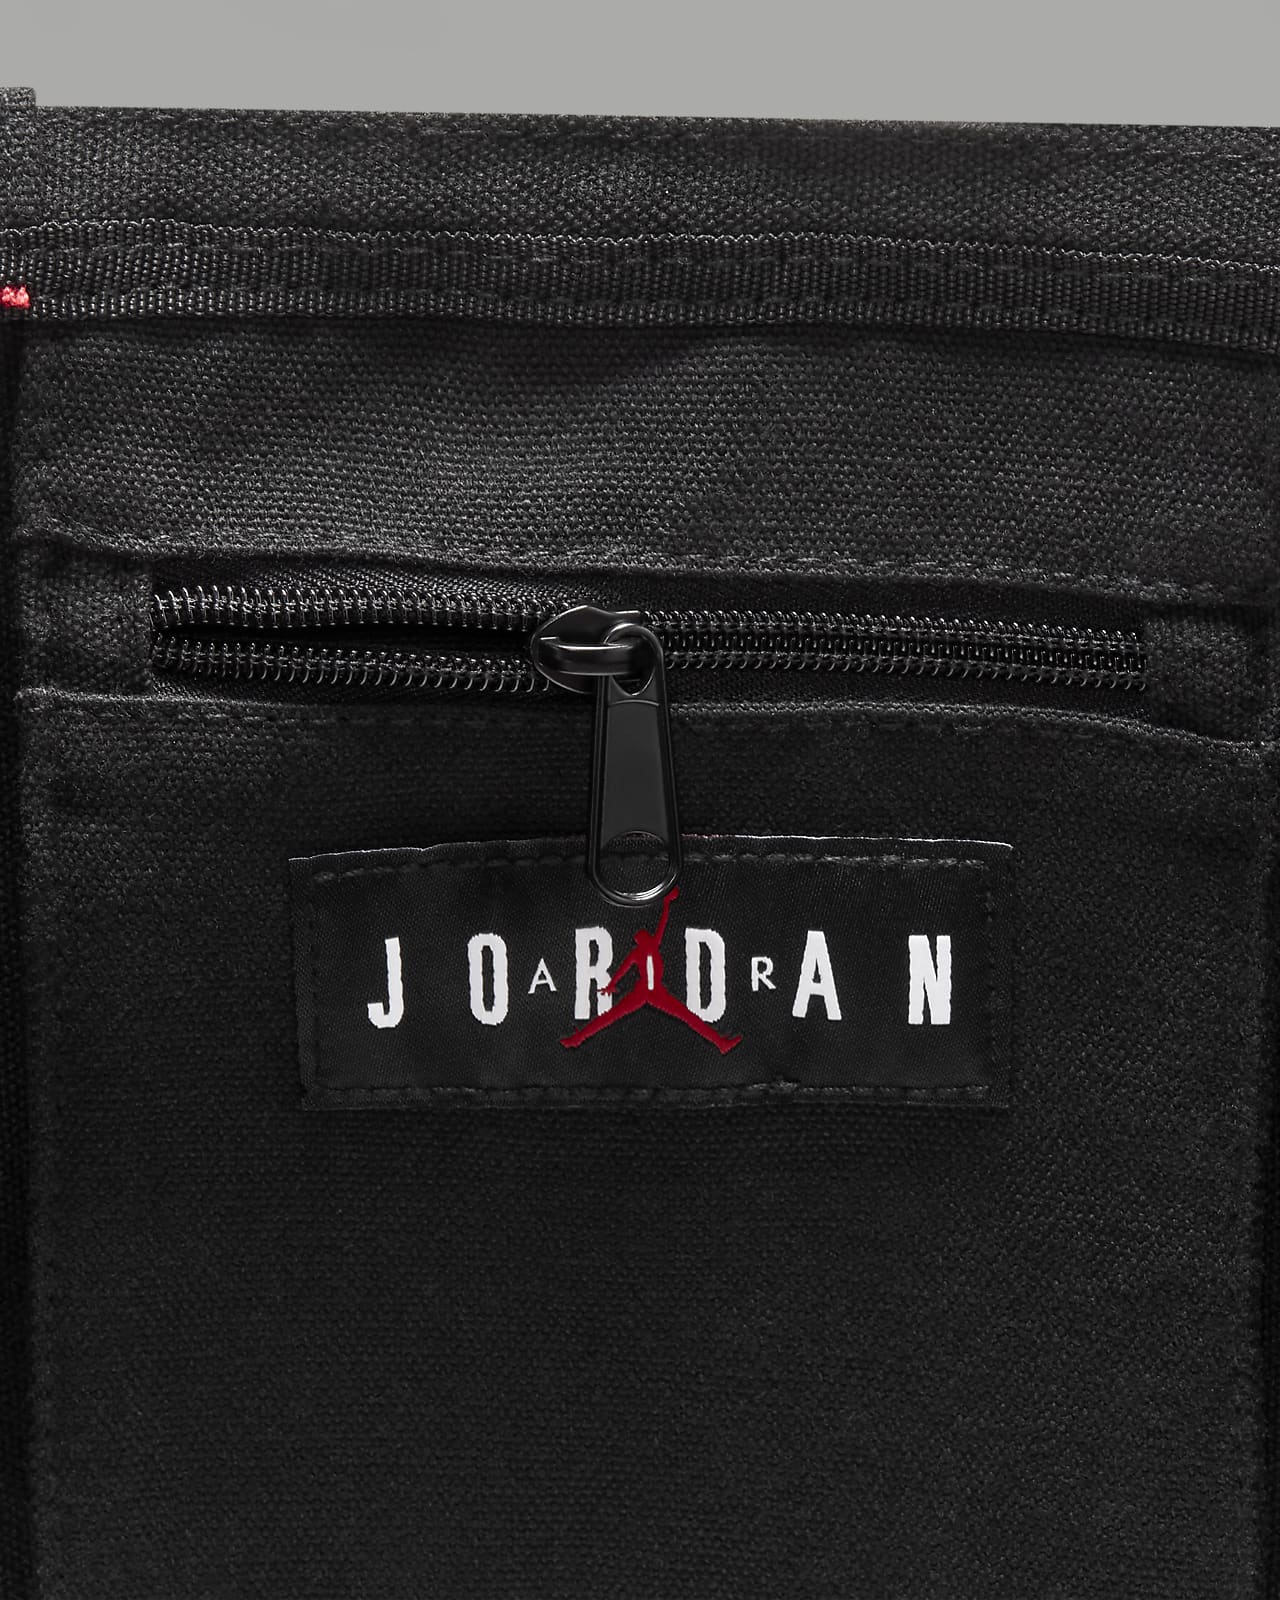 Jordan Jumpman x Nike Tote Bag